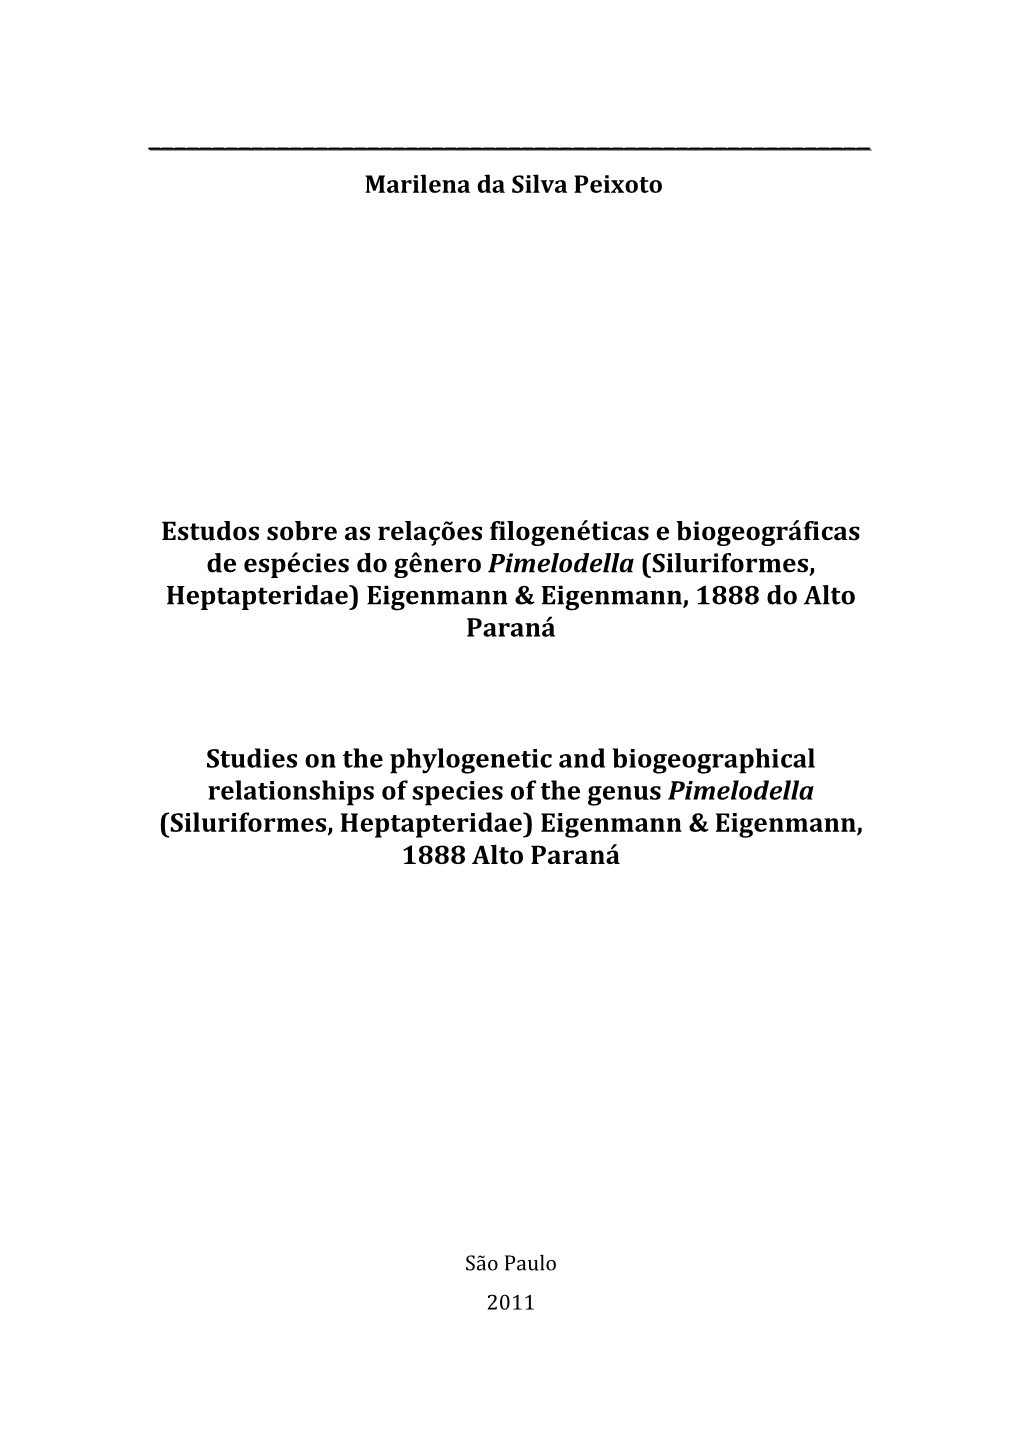 Estudos Sobre As Relações Filogenéticas E Biogeográficas De Espécies Do Gênero Pimelodella (Siluriformes, Heptapteridae) Eigenmann & Eigenmann, 1888 Do Alto Paraná